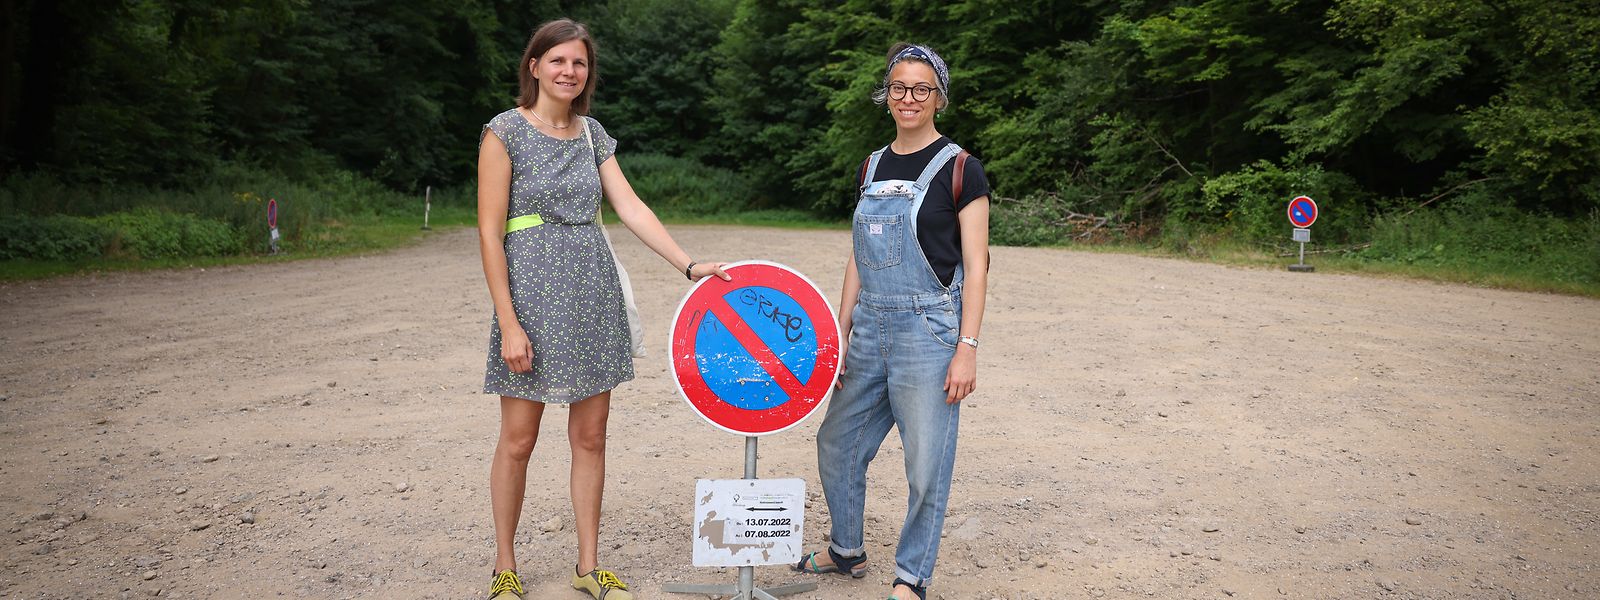 Die Mitorganisatorin „Neckel“ Scholtus und die Künstlerin Cristina Picco posieren vor dem, noch unfertigen, Campinggelände, wo ab dem 18. Juli die Künstlerresidenz „Nomadic Island“ anläuft.